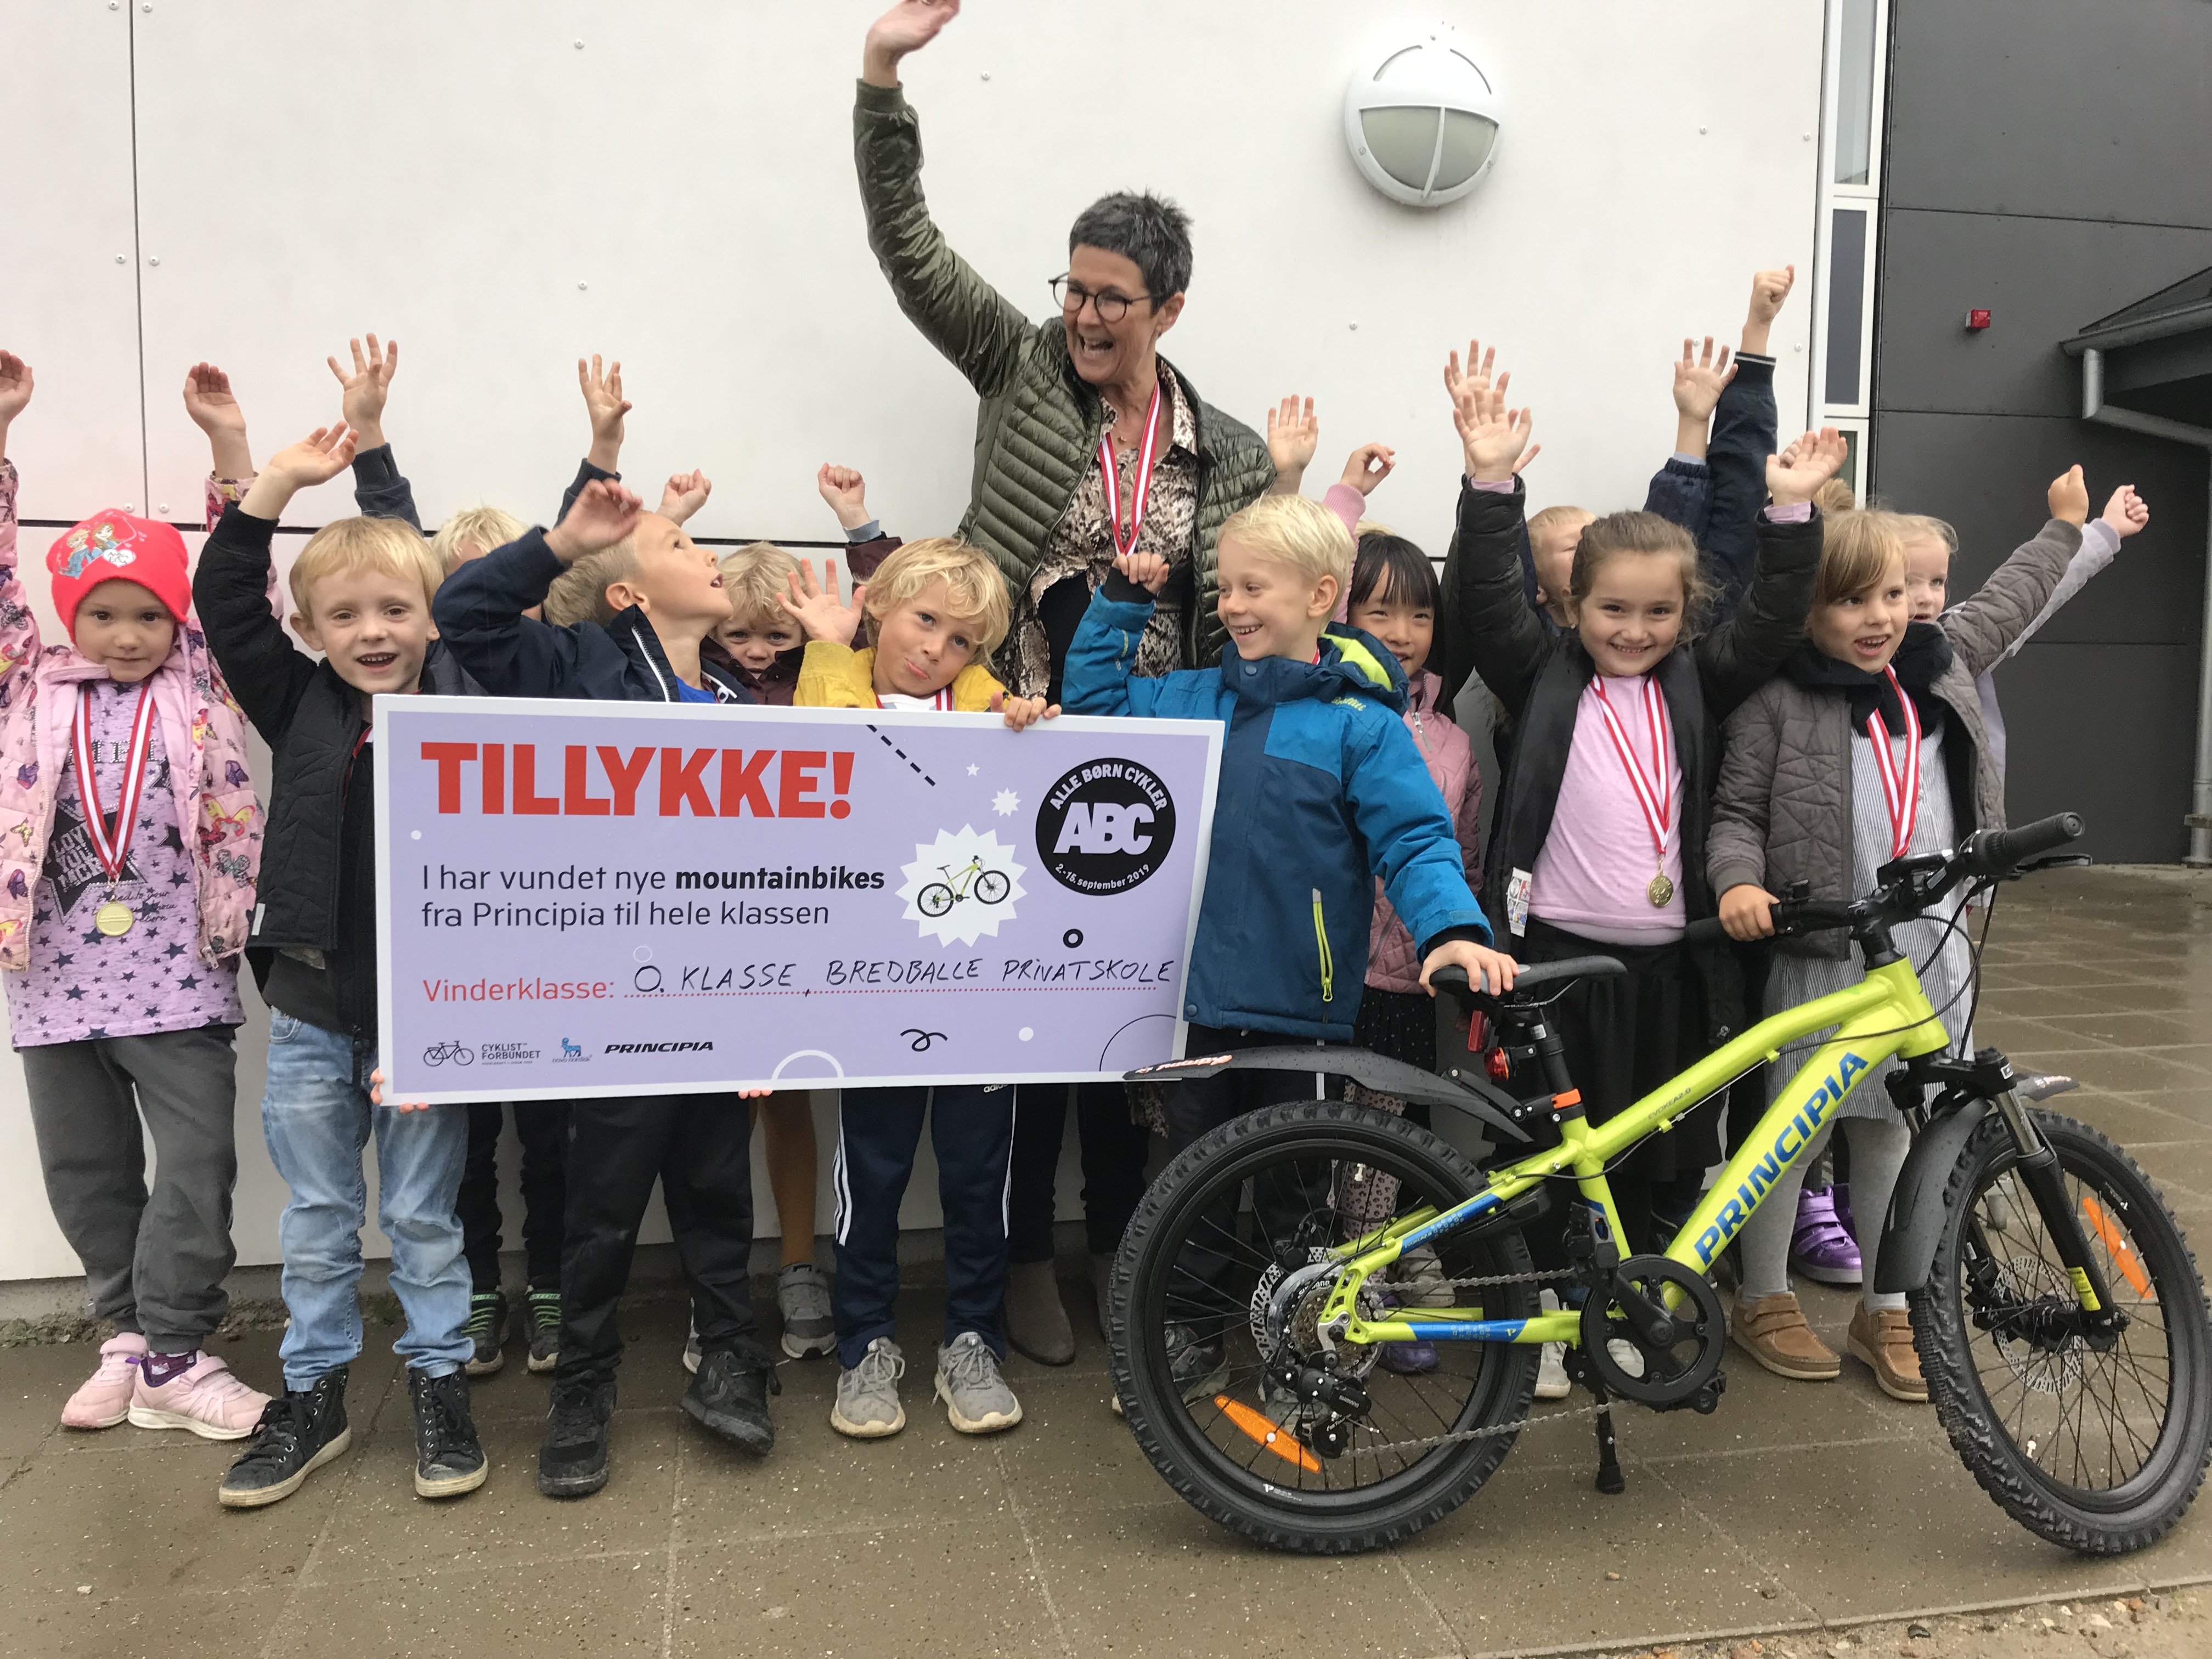 0. klasse på skole ved Vejle vinder børnemotionskampagne | Cyklistforbundet